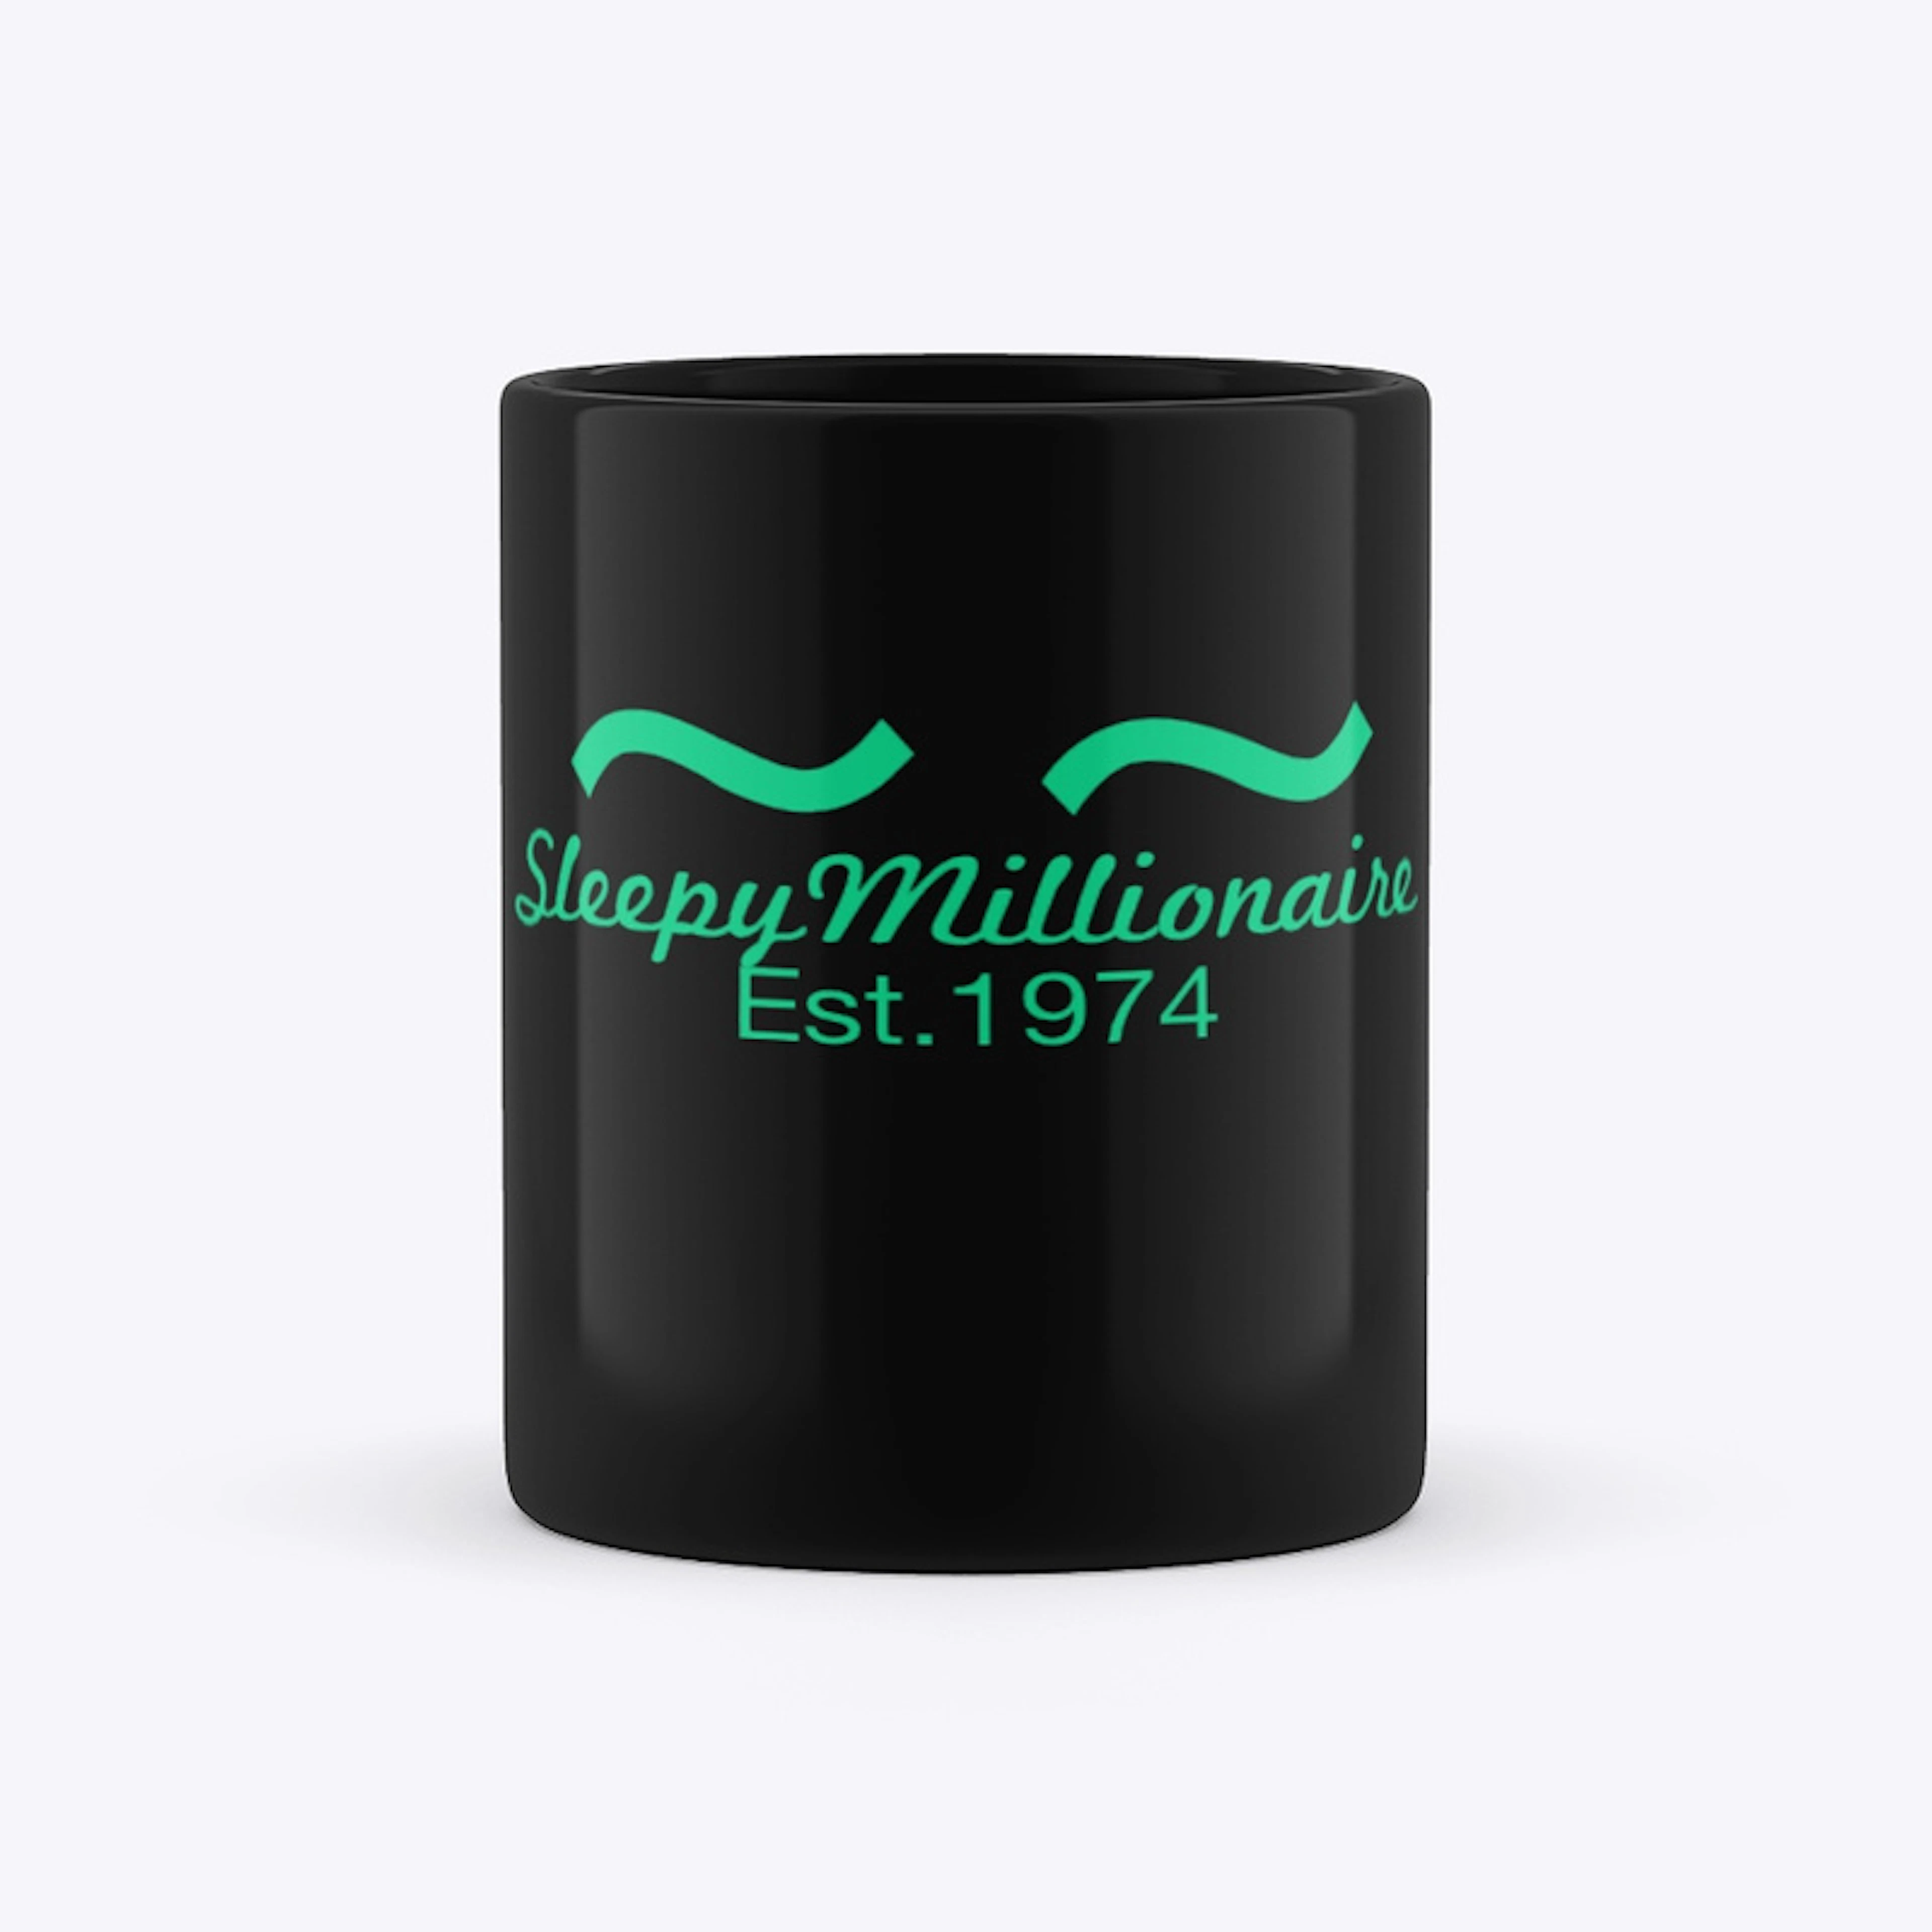 Sleepy Millionaire coffee mug